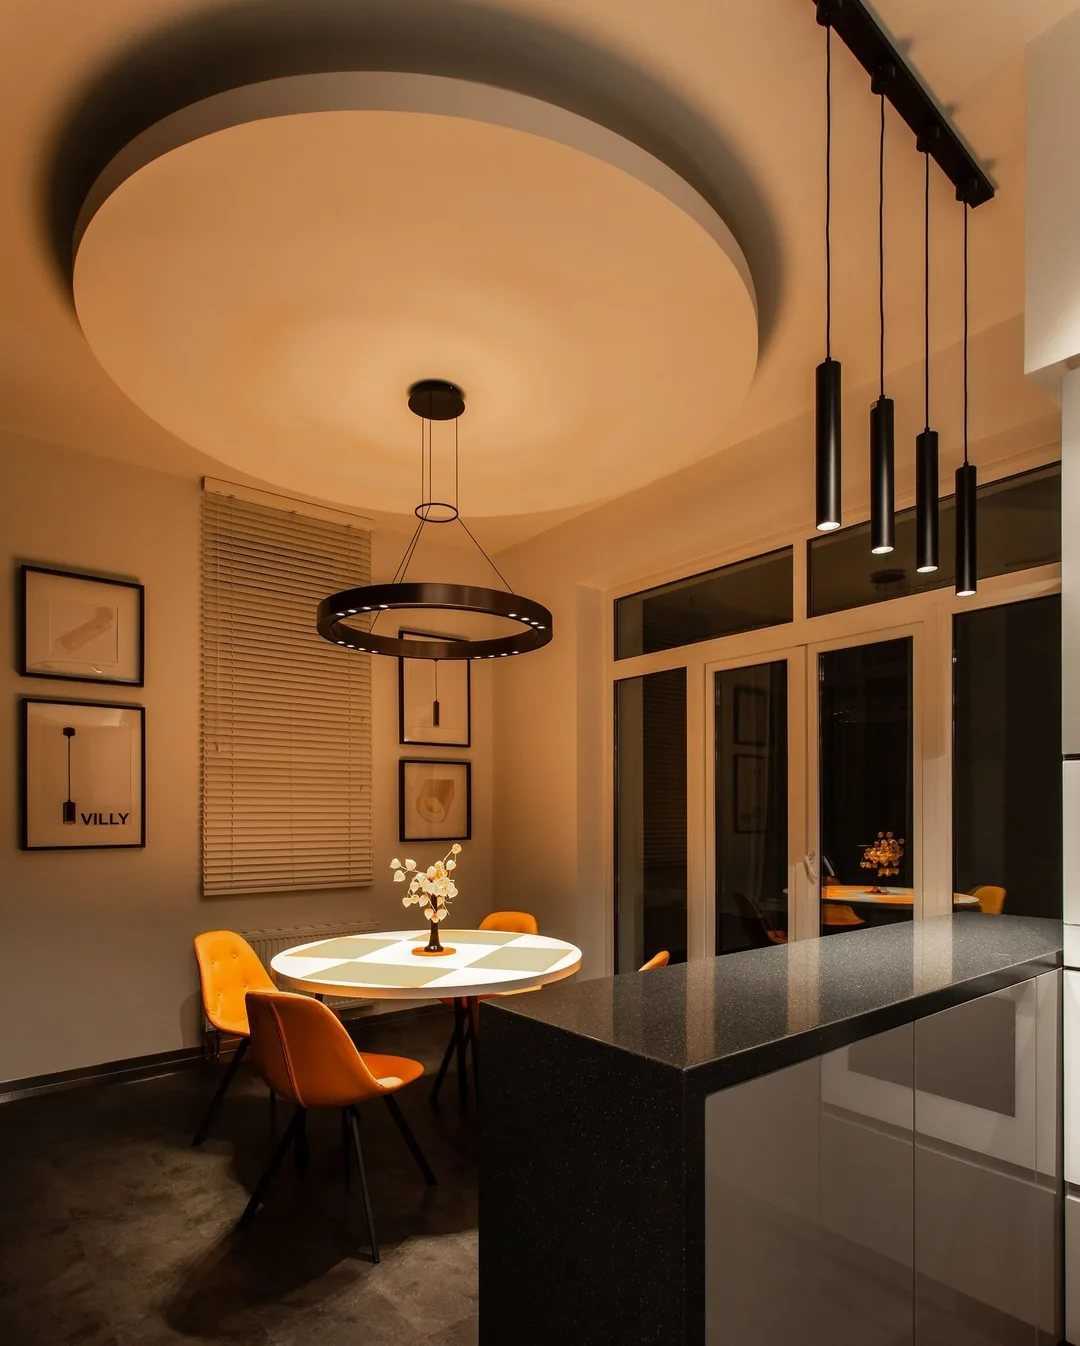 Подсветка для кухни под шкафы: светильники под кухонные навесные шкафчики, световая планка